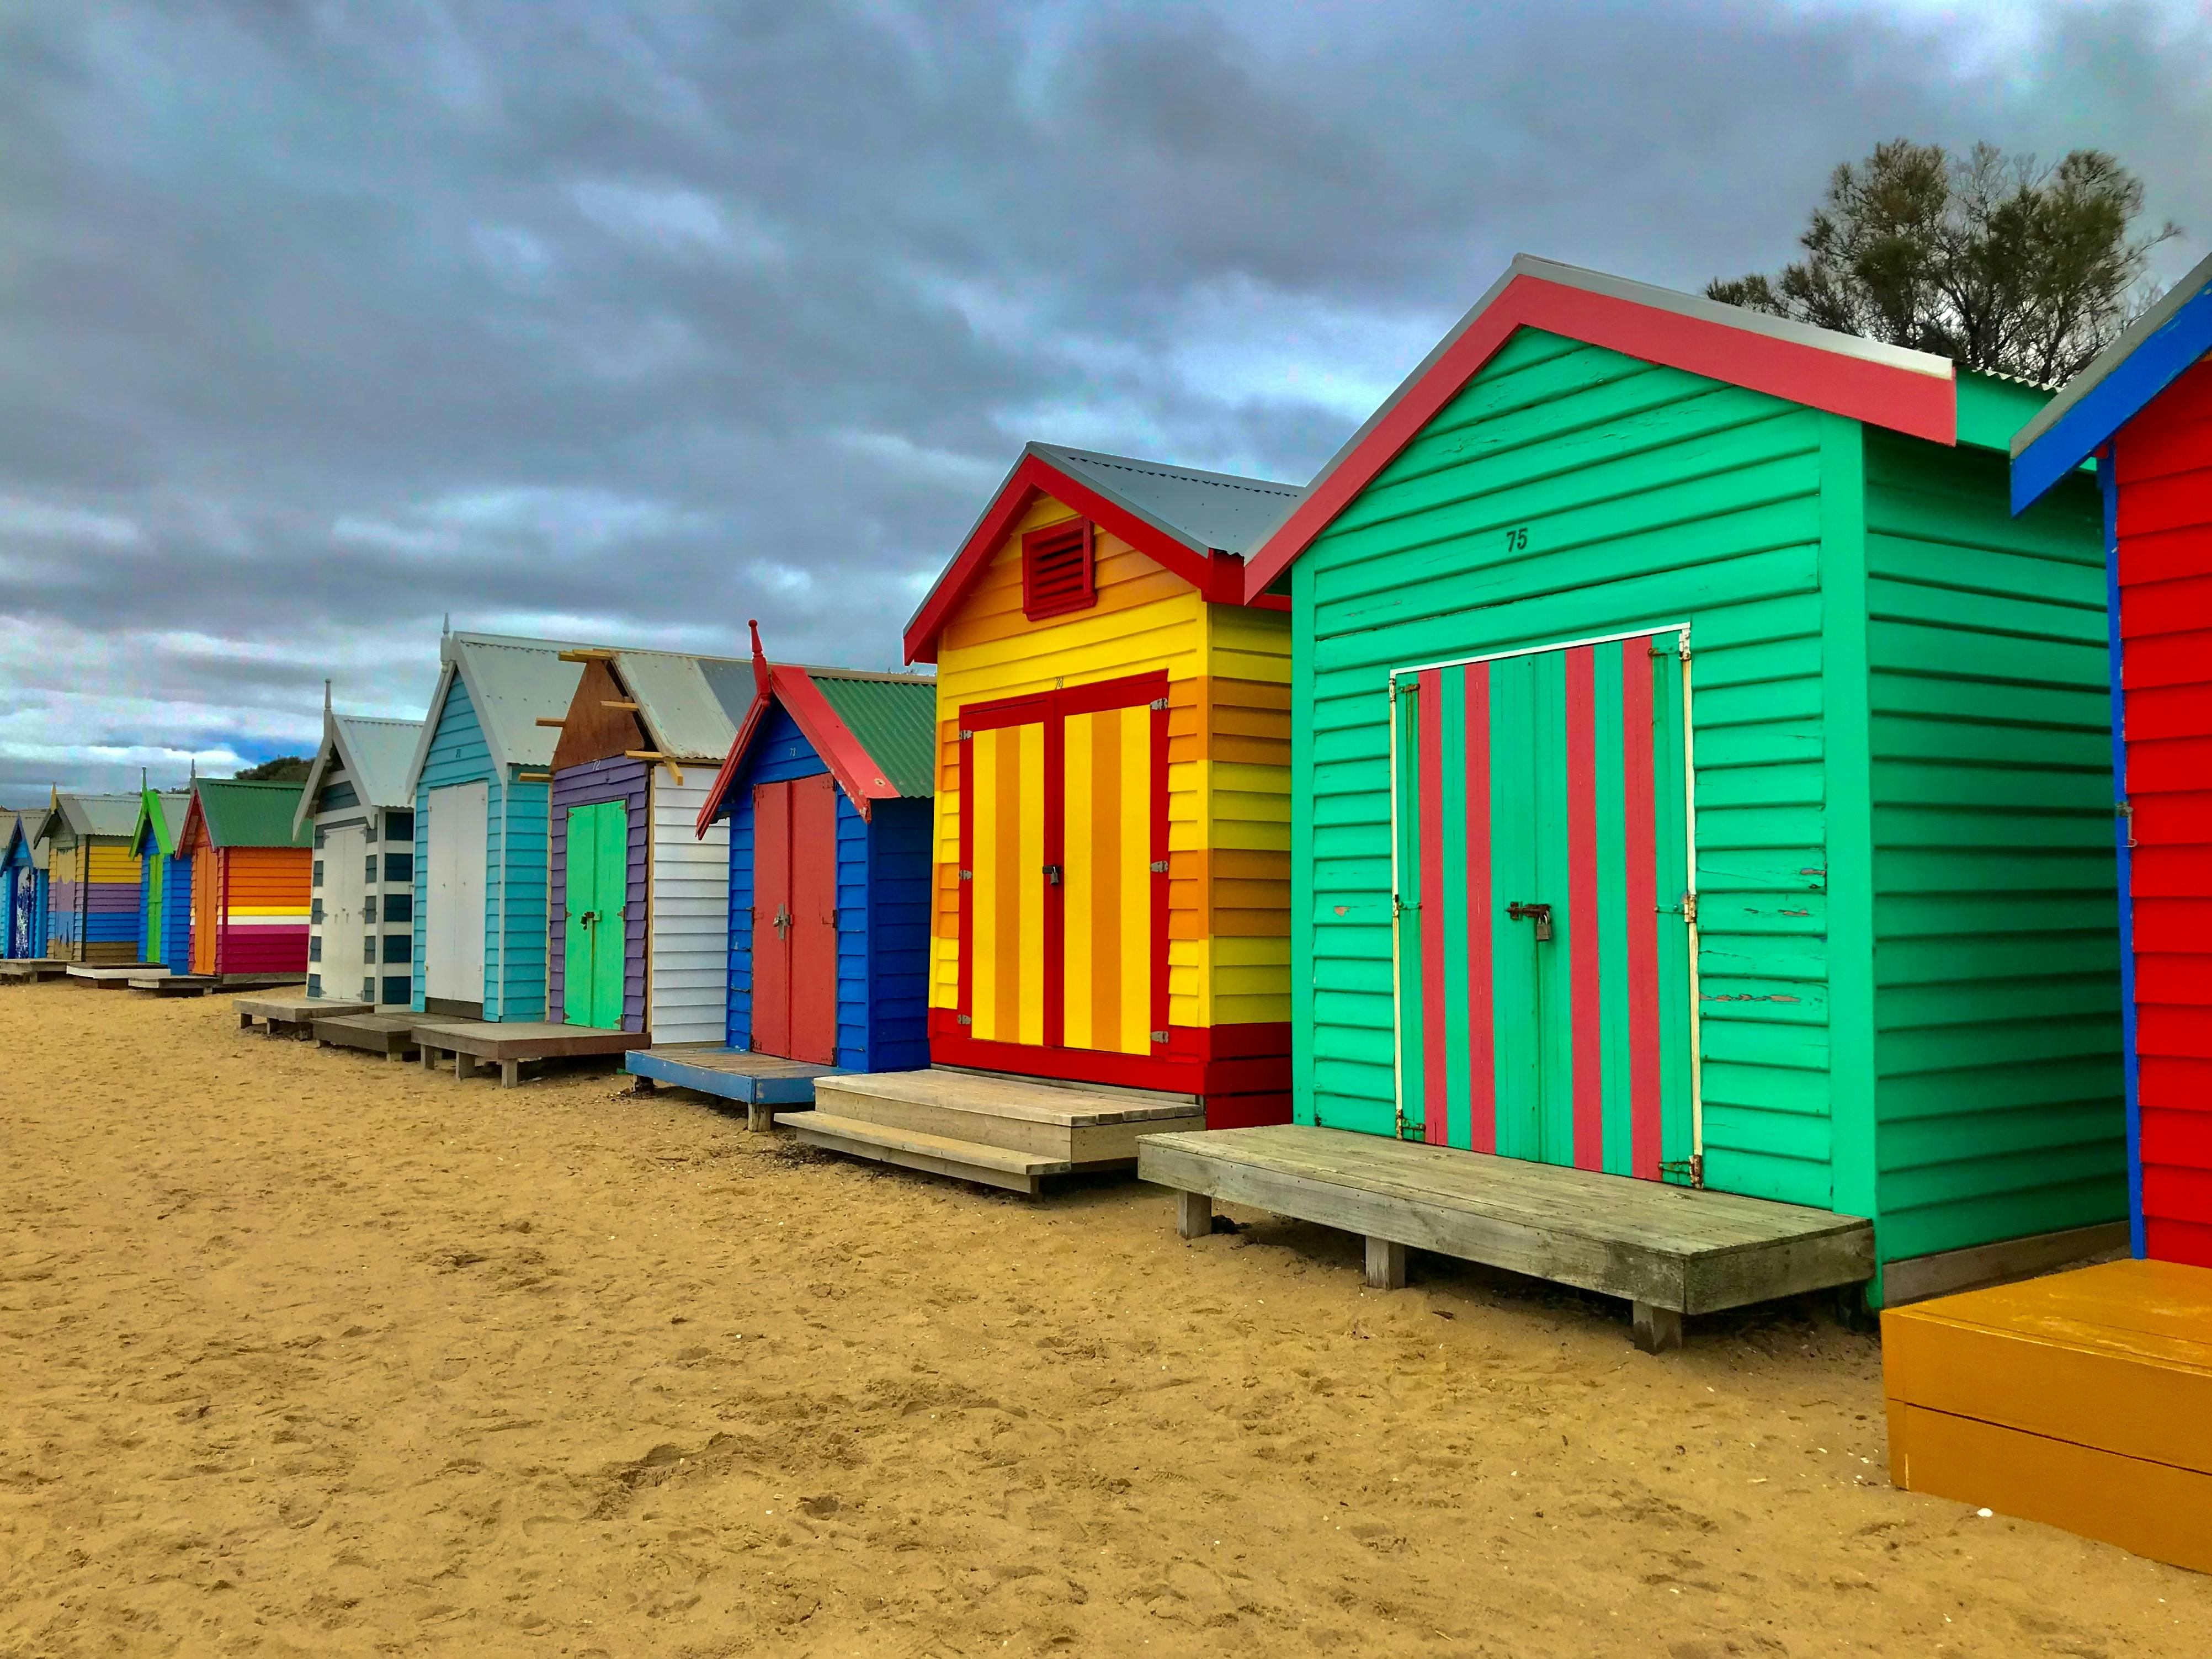 Brighton Beach in Melbourne